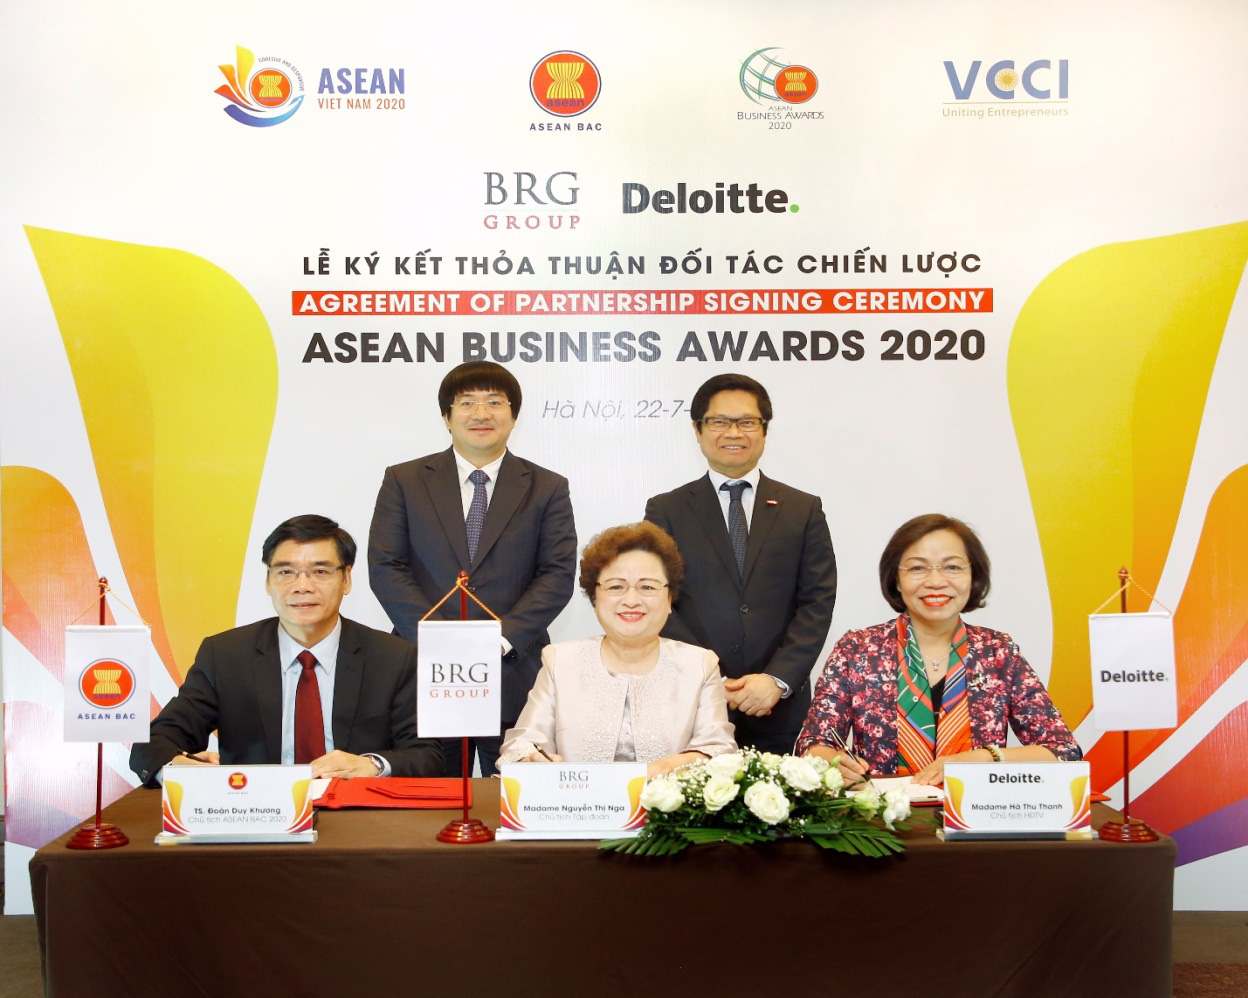 Giải thưởng ASEAN Business Awards 2020 tôn vinh những doanh nghiệp xuất sắc nhất khu vực